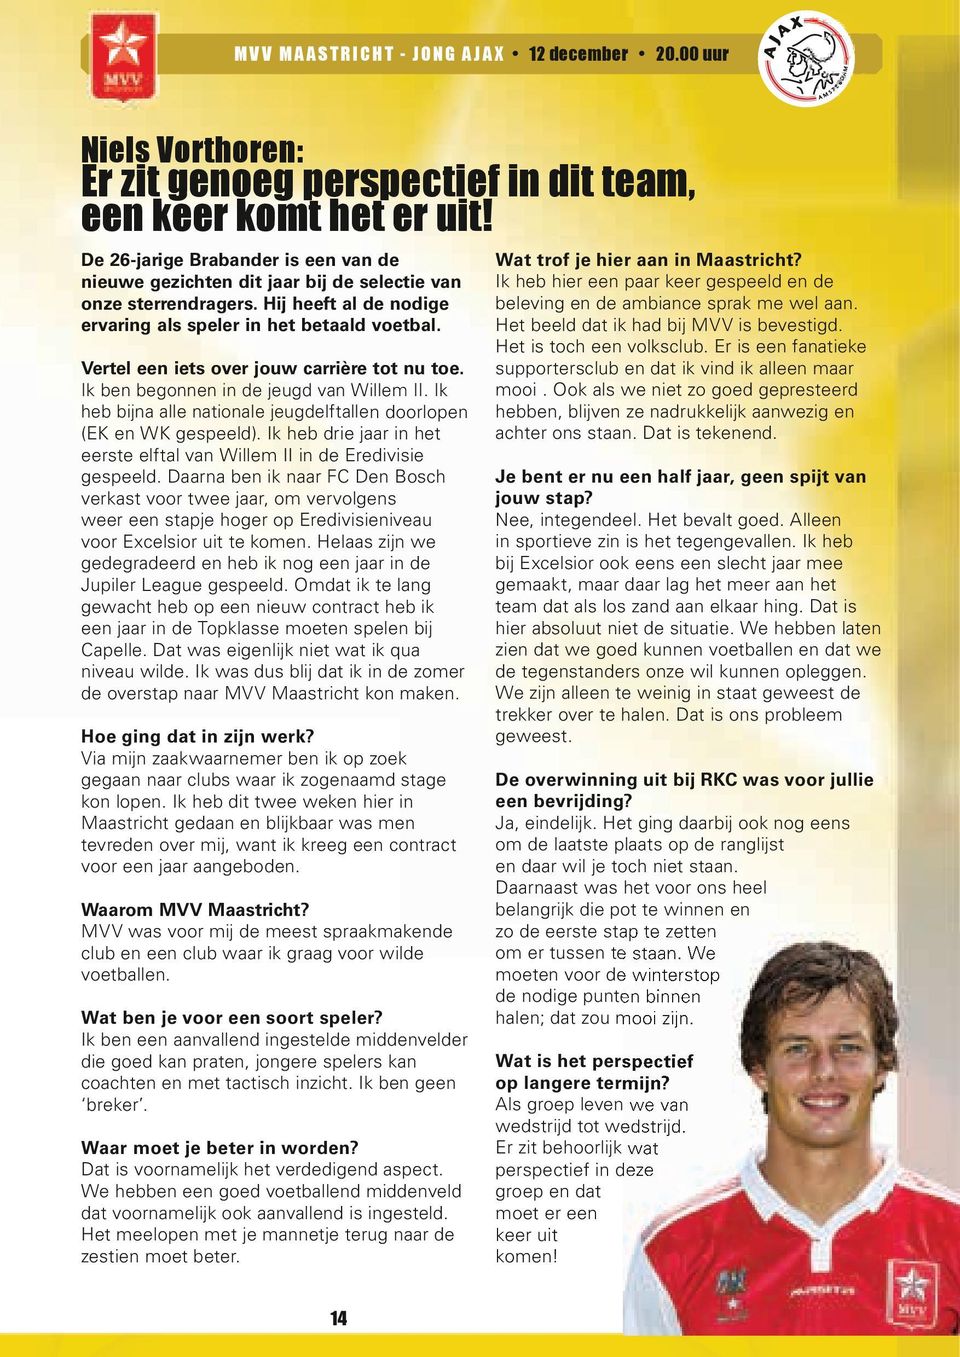 Vertel een iets over jouw carrière tot nu toe. Ik ben begonnen in de jeugd van Willem II. Ik heb bijna alle nationale jeugdelftallen doorlopen (EK en WK gespeeld).